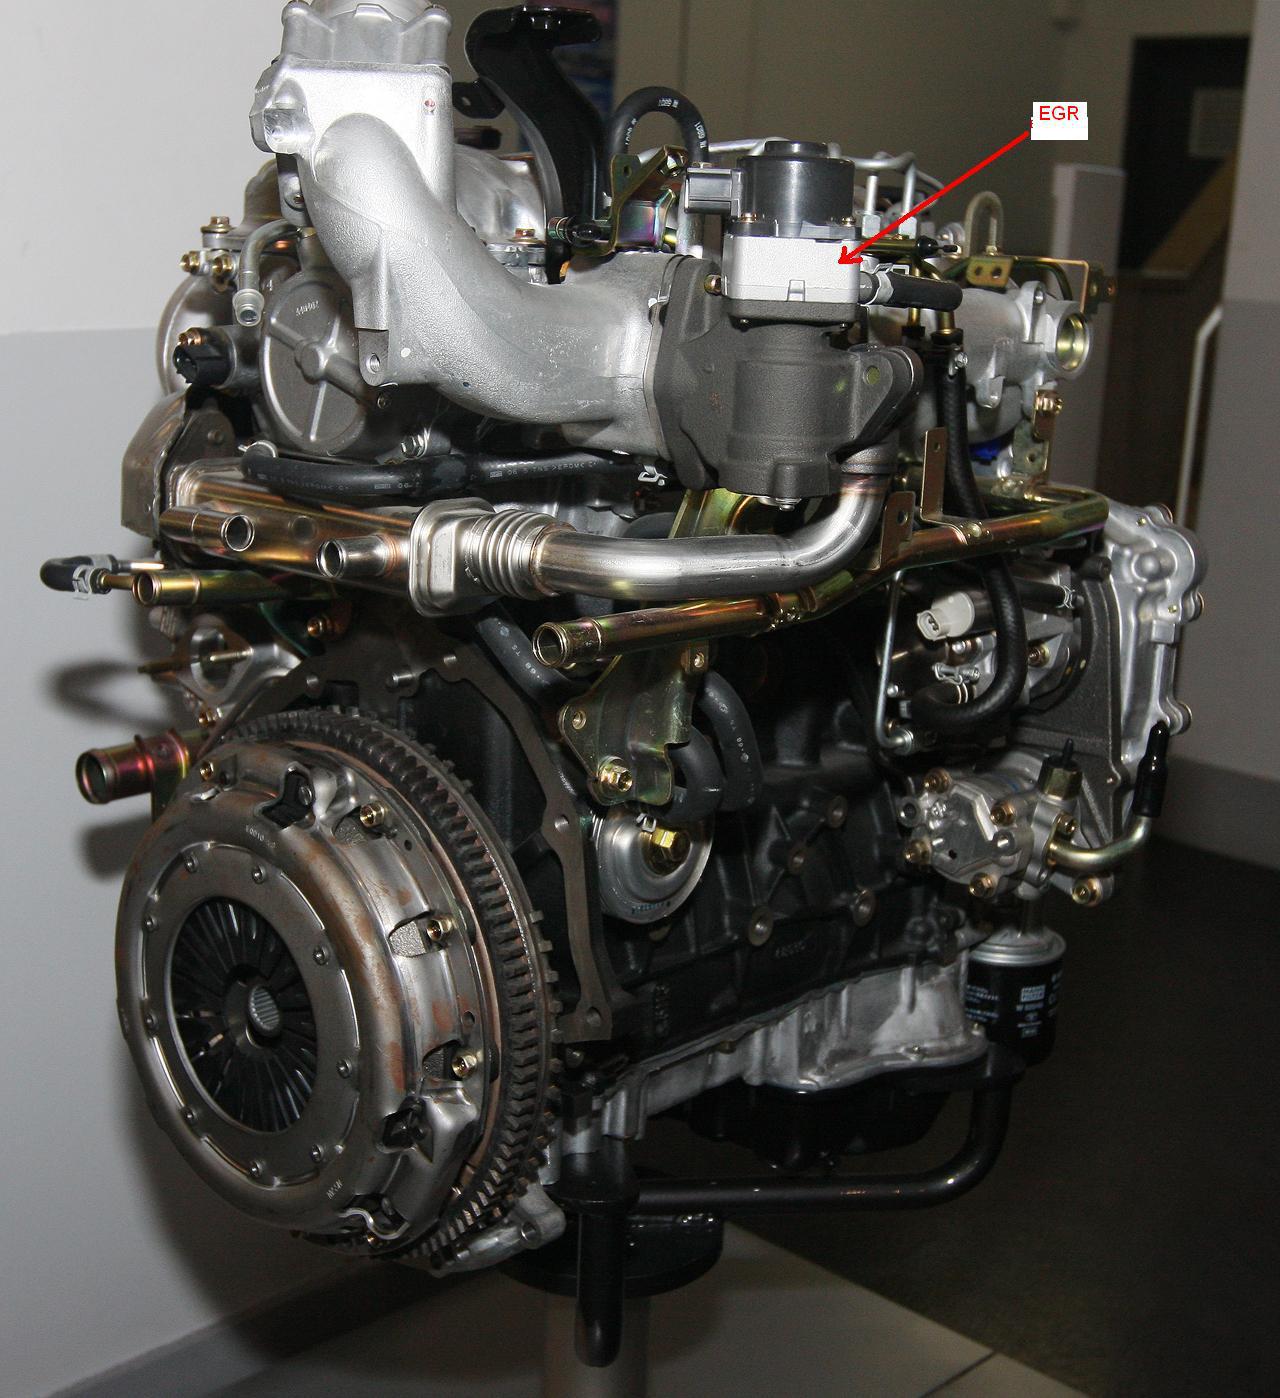 Nissan yd engine problems